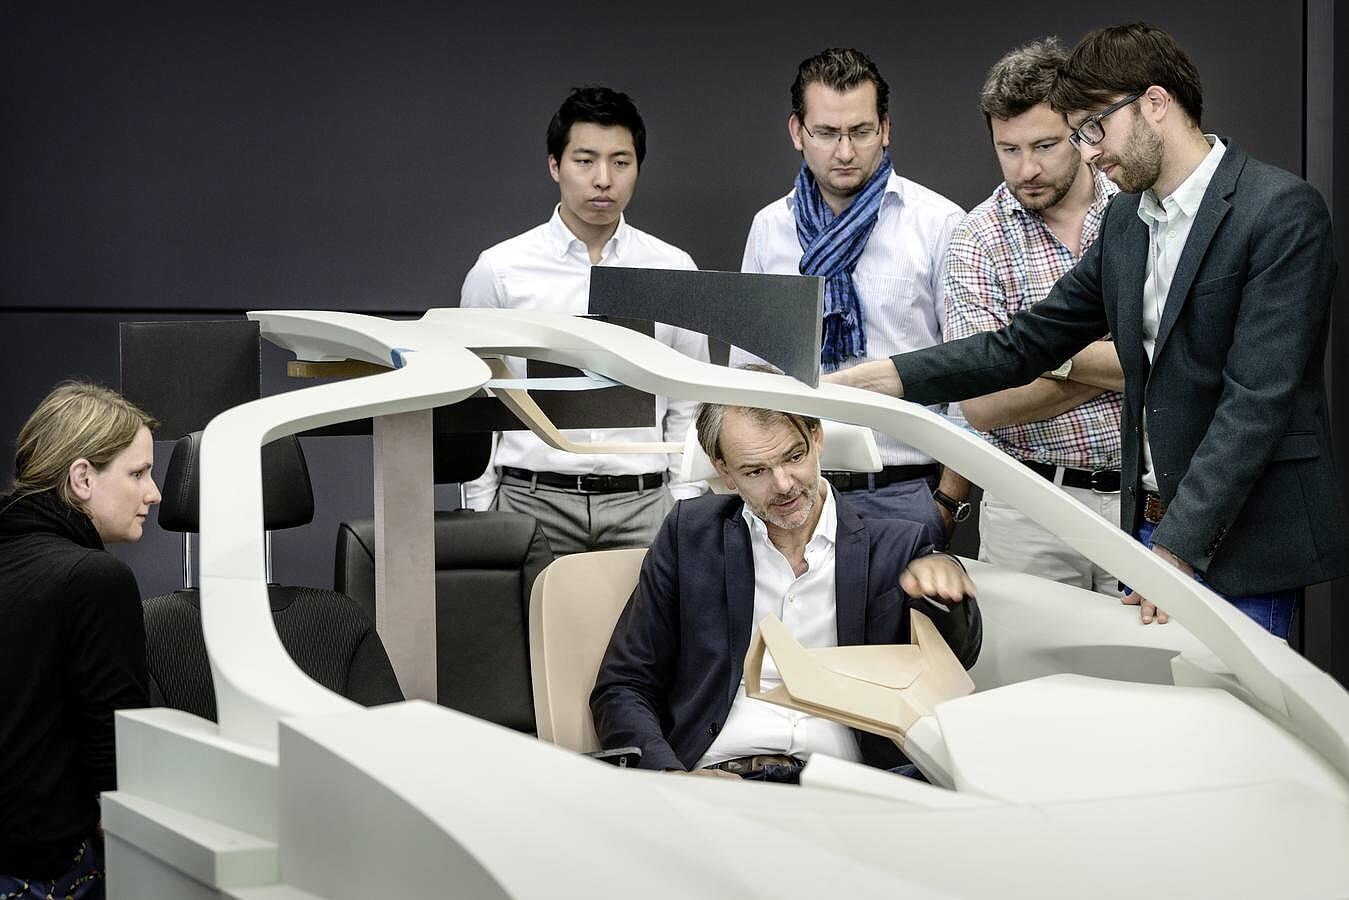 La capacidad de emprender acciones con visión de futuro es parte del ADN de BMW